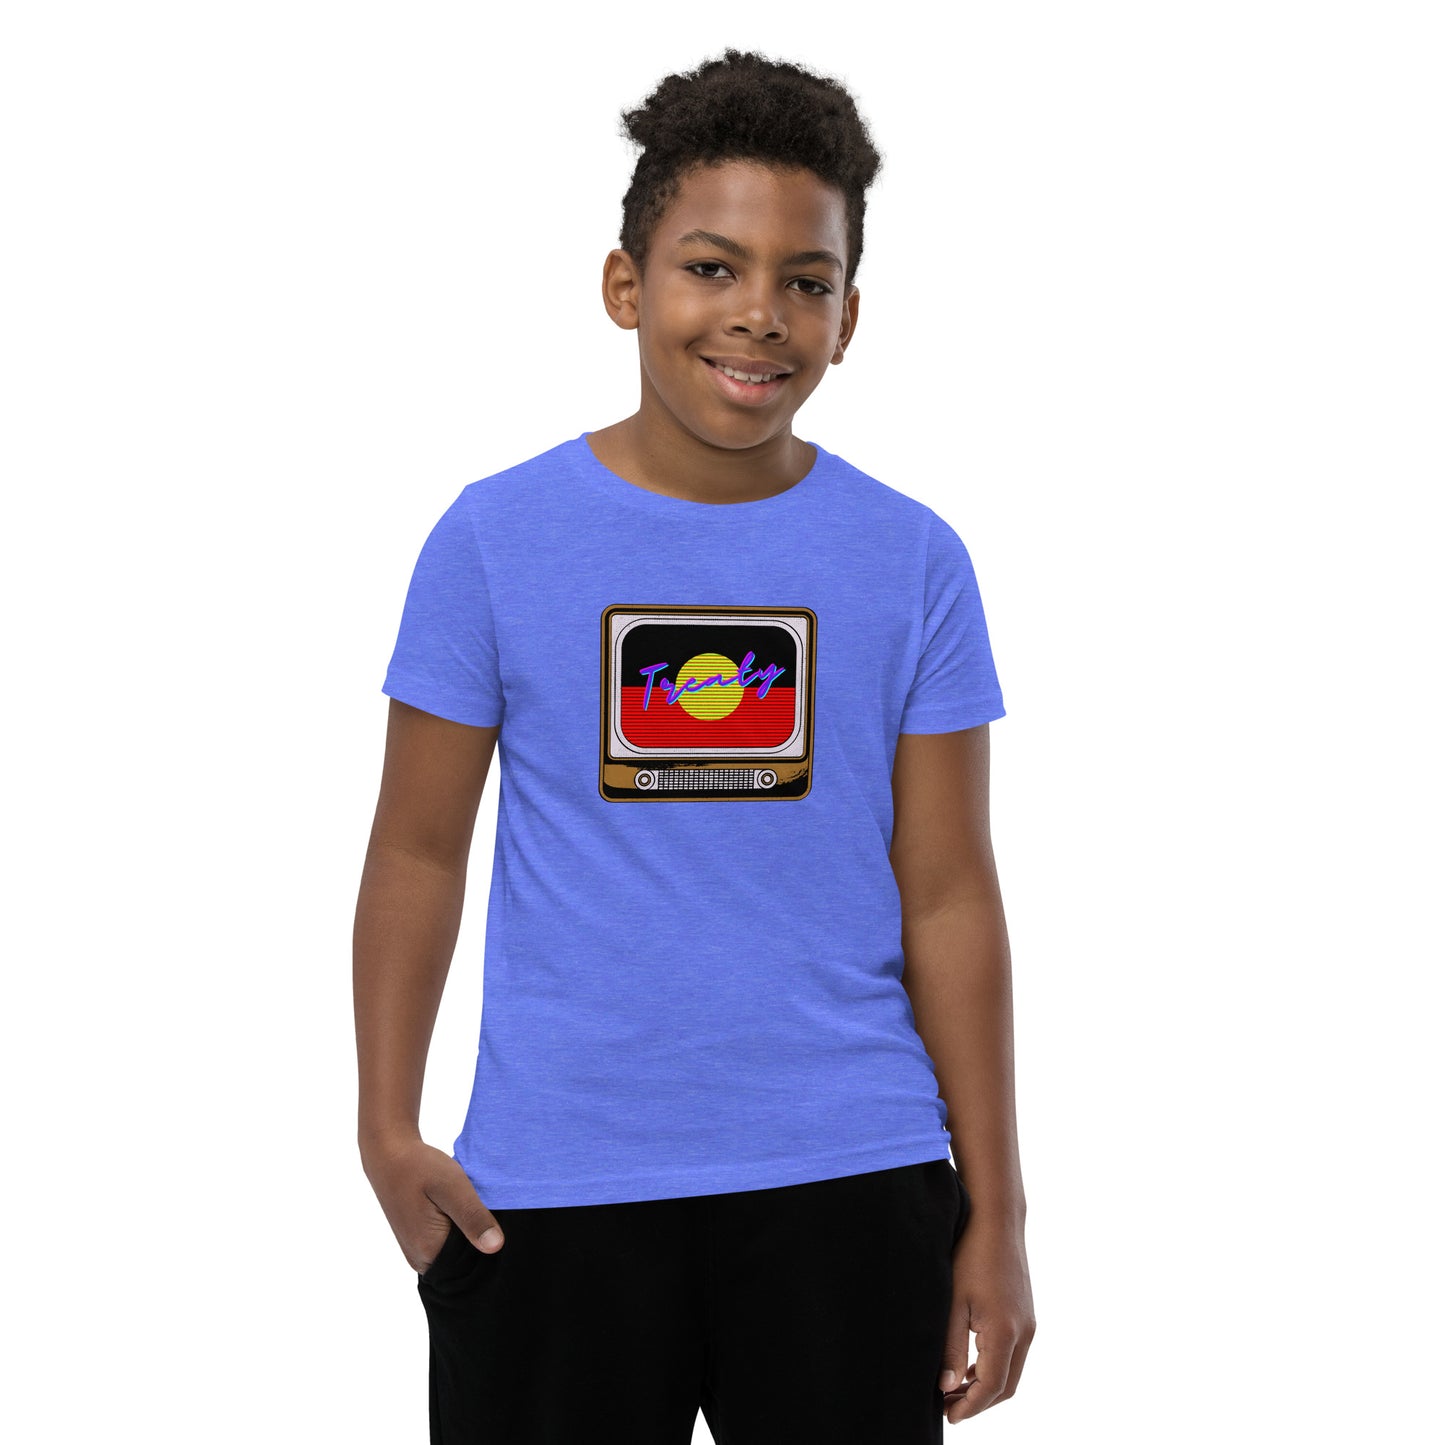 Treaty Youth Short Sleeve T-Shirt